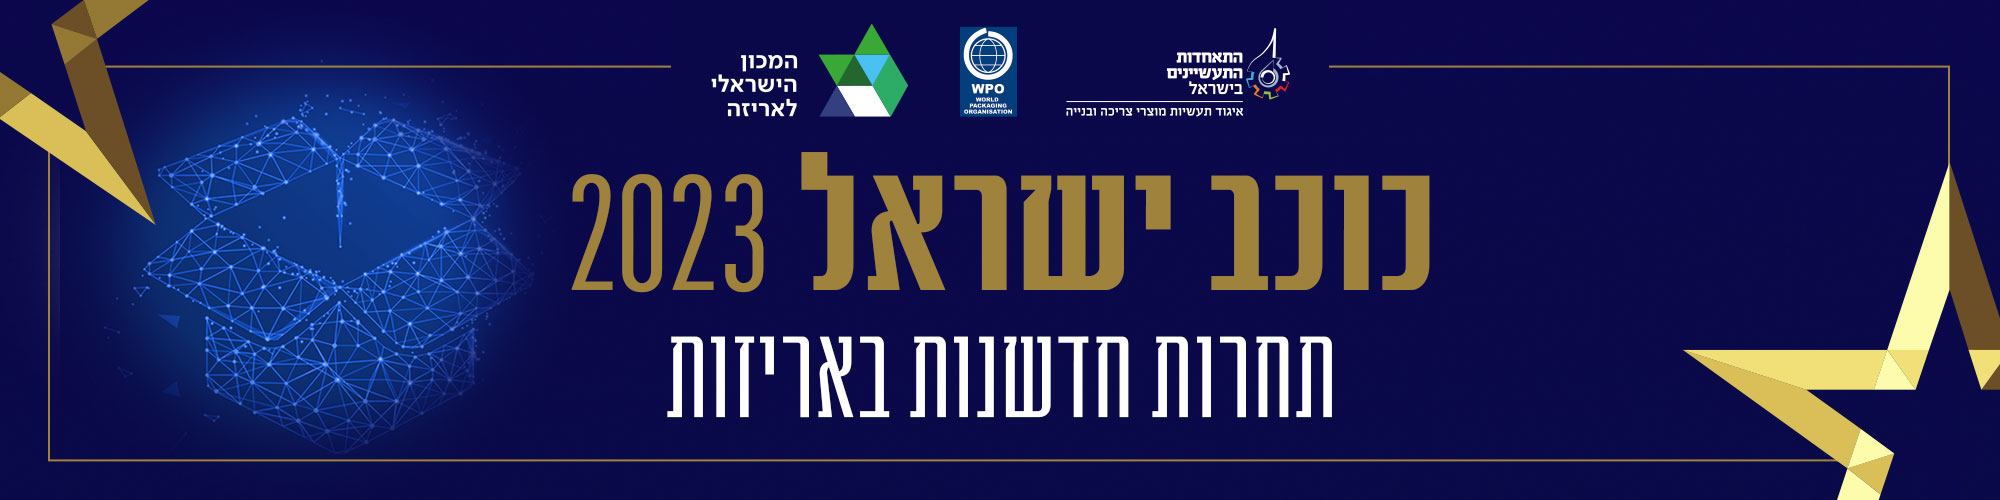 תחרות חדשנות באריזה - כוכב ישראל 2023